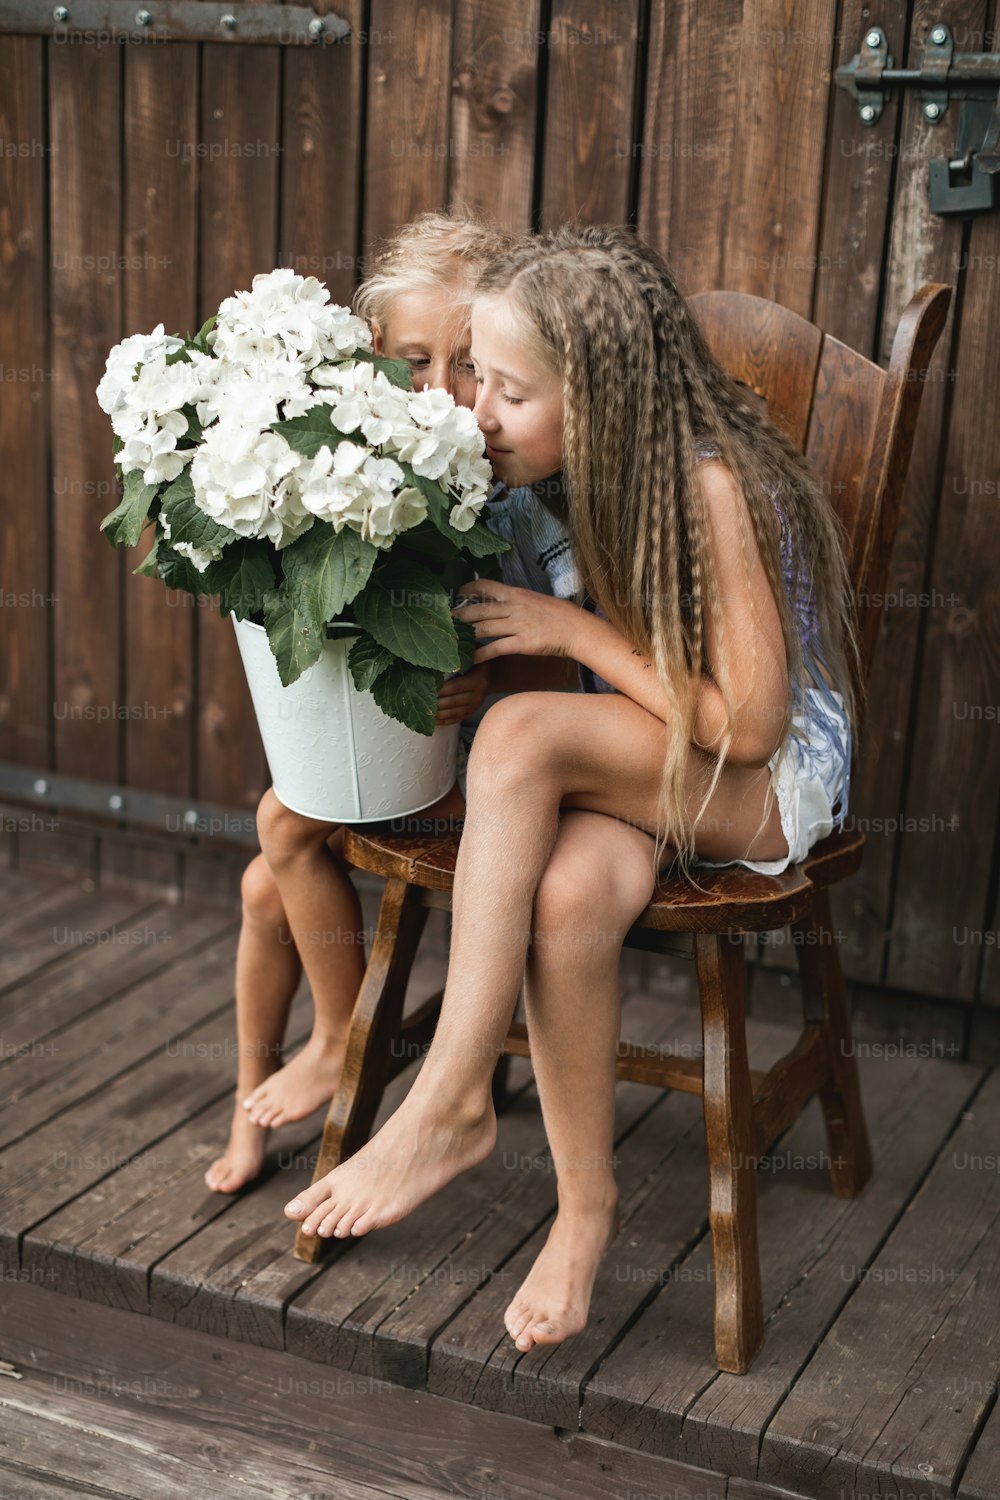 Niños y flores, verano, campo y diversión. Vacaciones de verano. Dos bonitas niñas sentadas en la silla frente a un granero de madera y oliendo flores de hortensias en un gran cubo blanco.